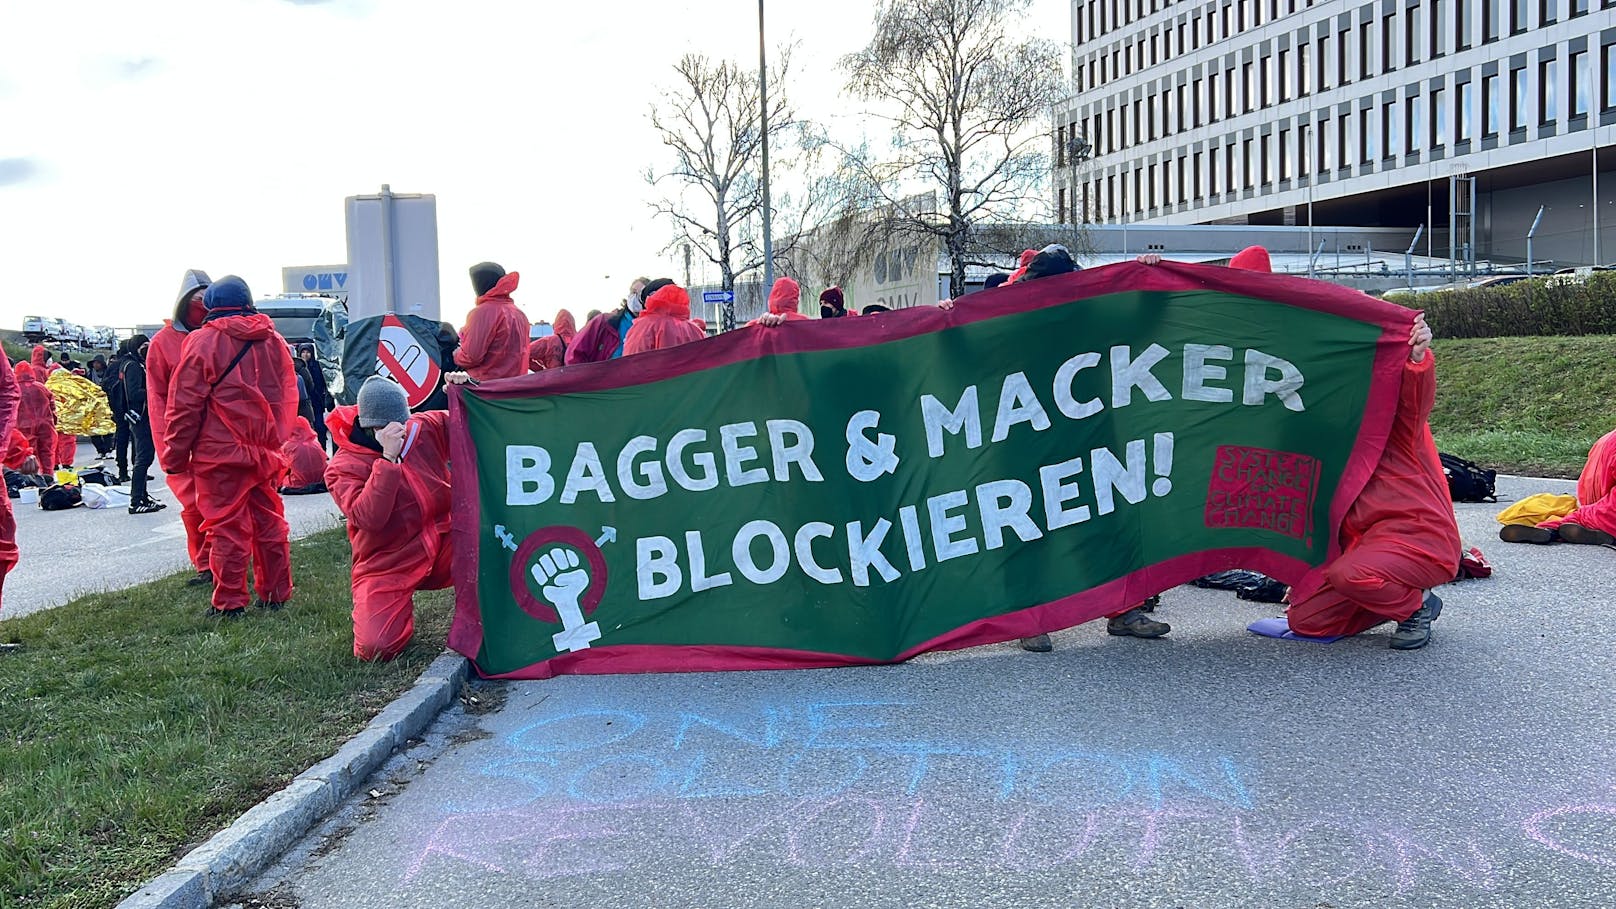 "Bagger und Macker blockieren", so eine Forderung der Demonstranten.